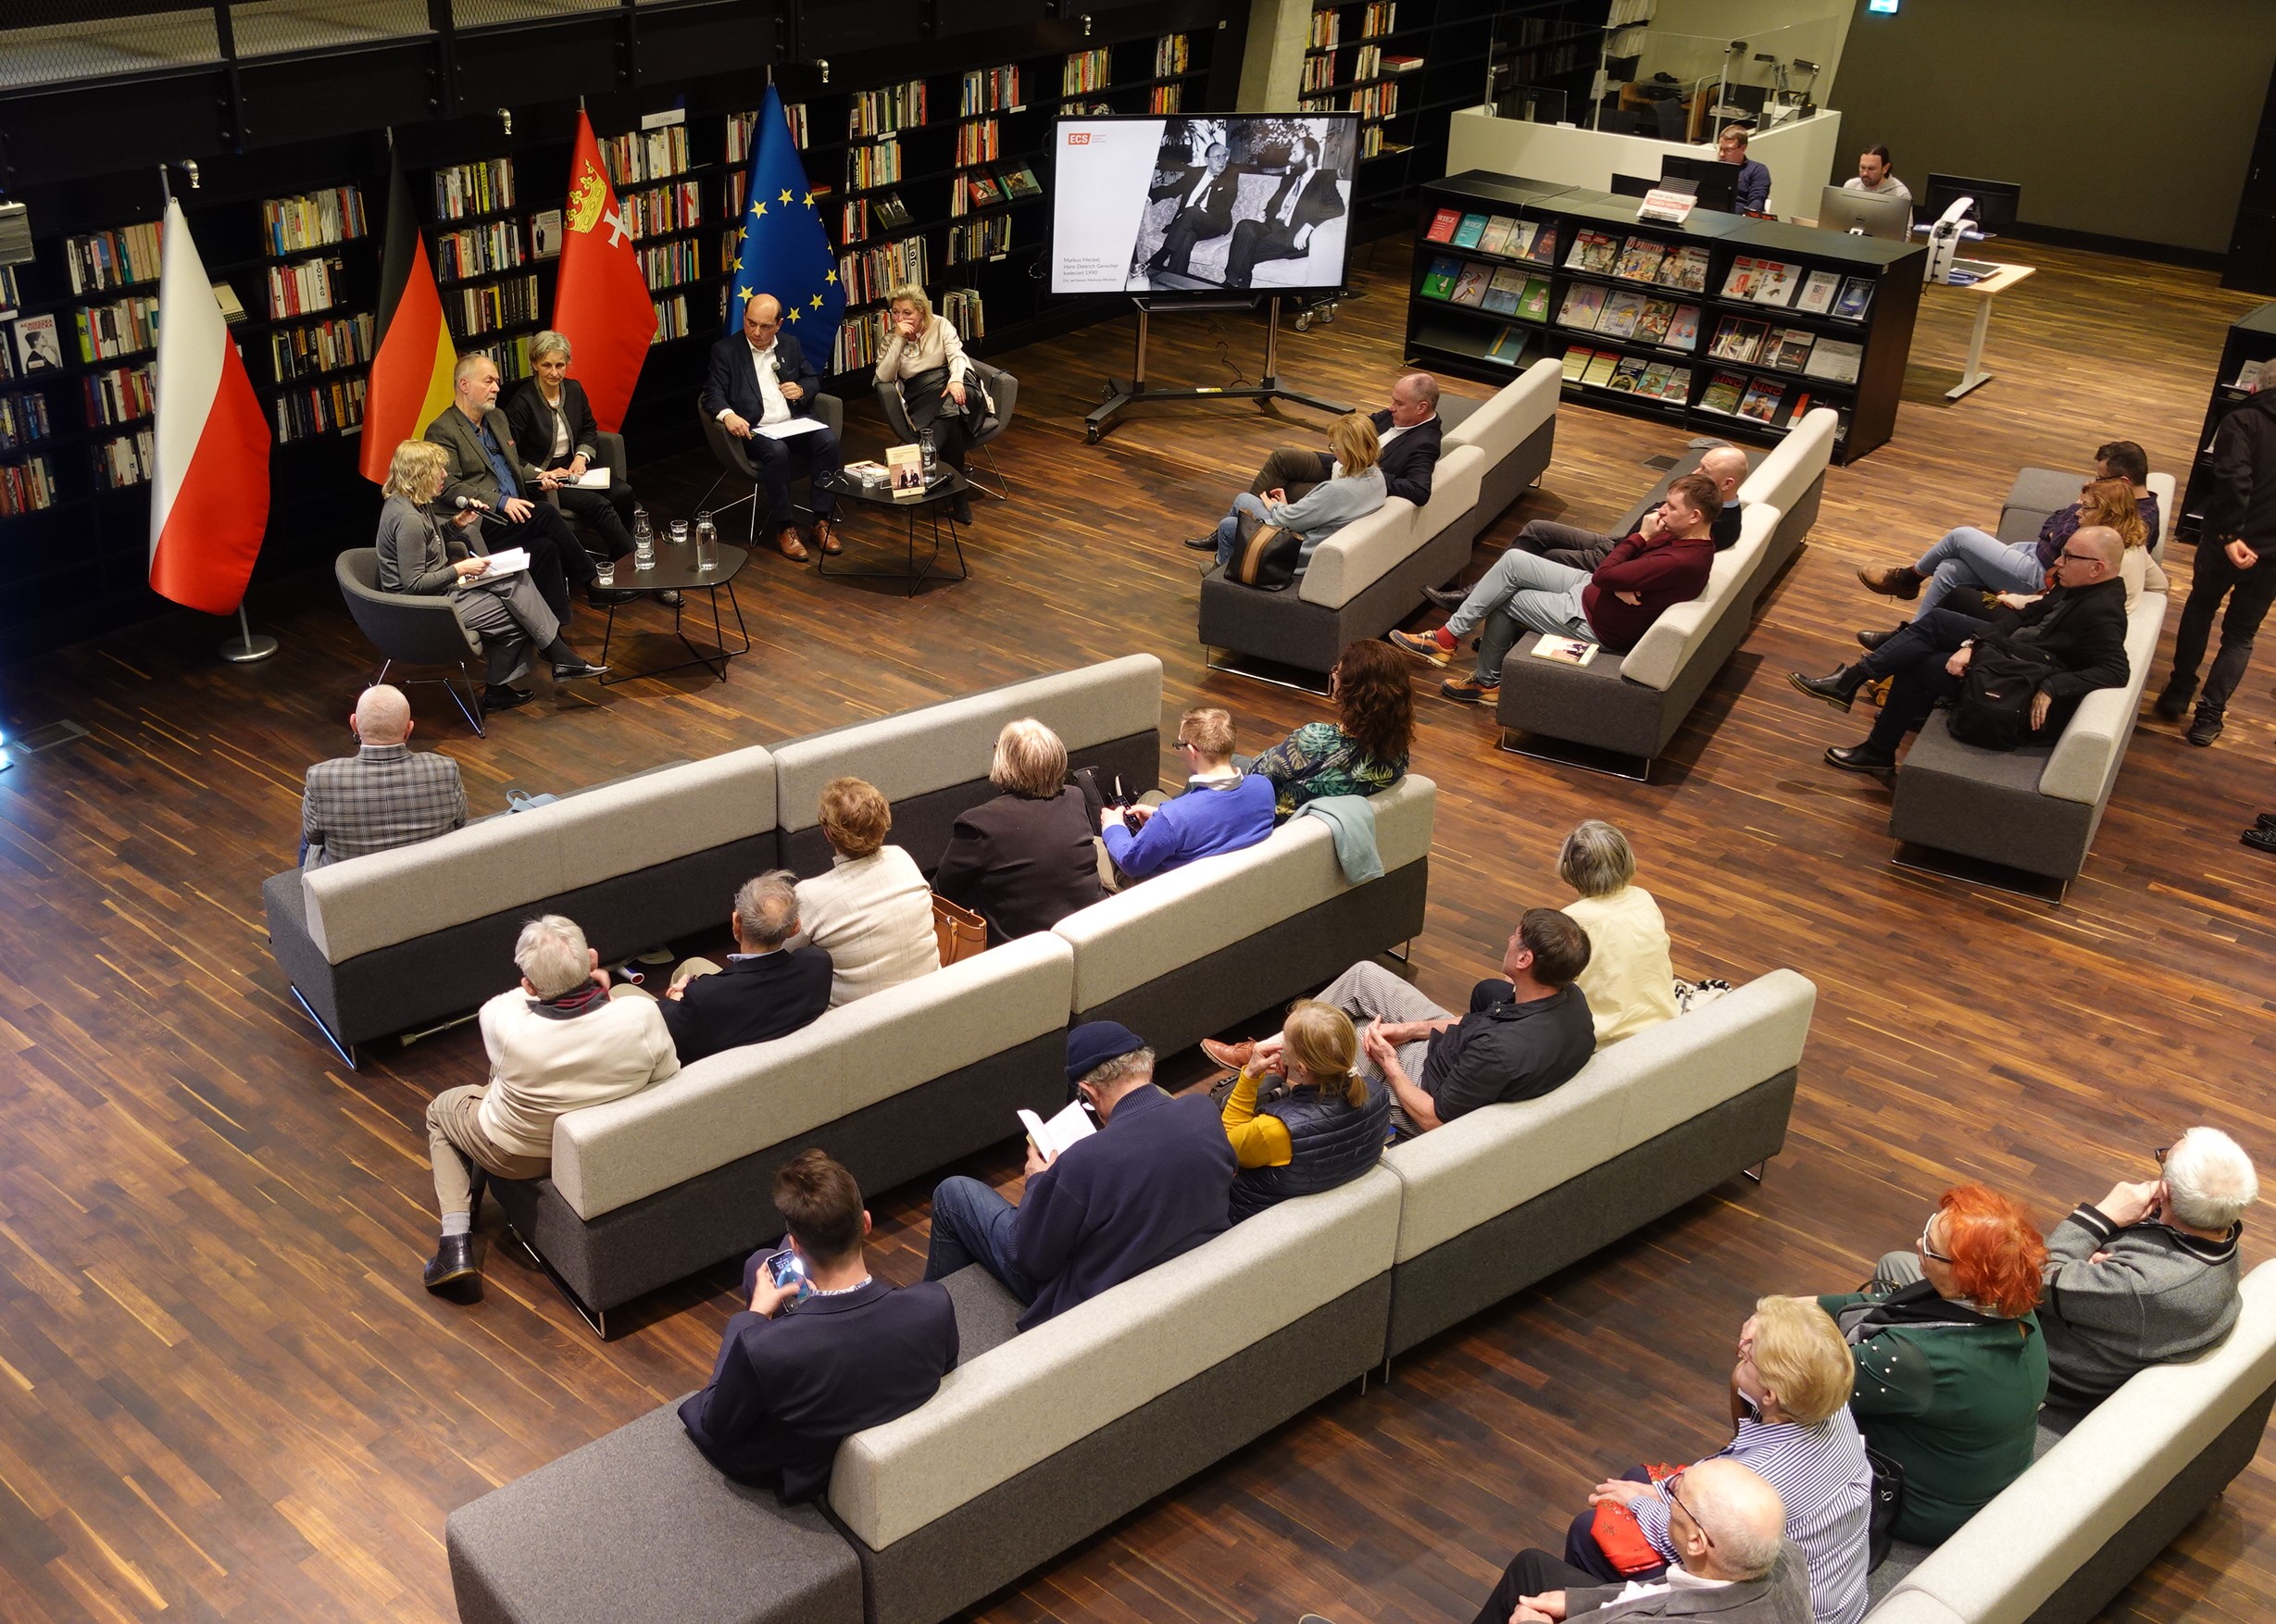 Blick von der Empore in der Bibliothek des ECS auf die VeranstaltungFoto: Uwe Hahnkamp